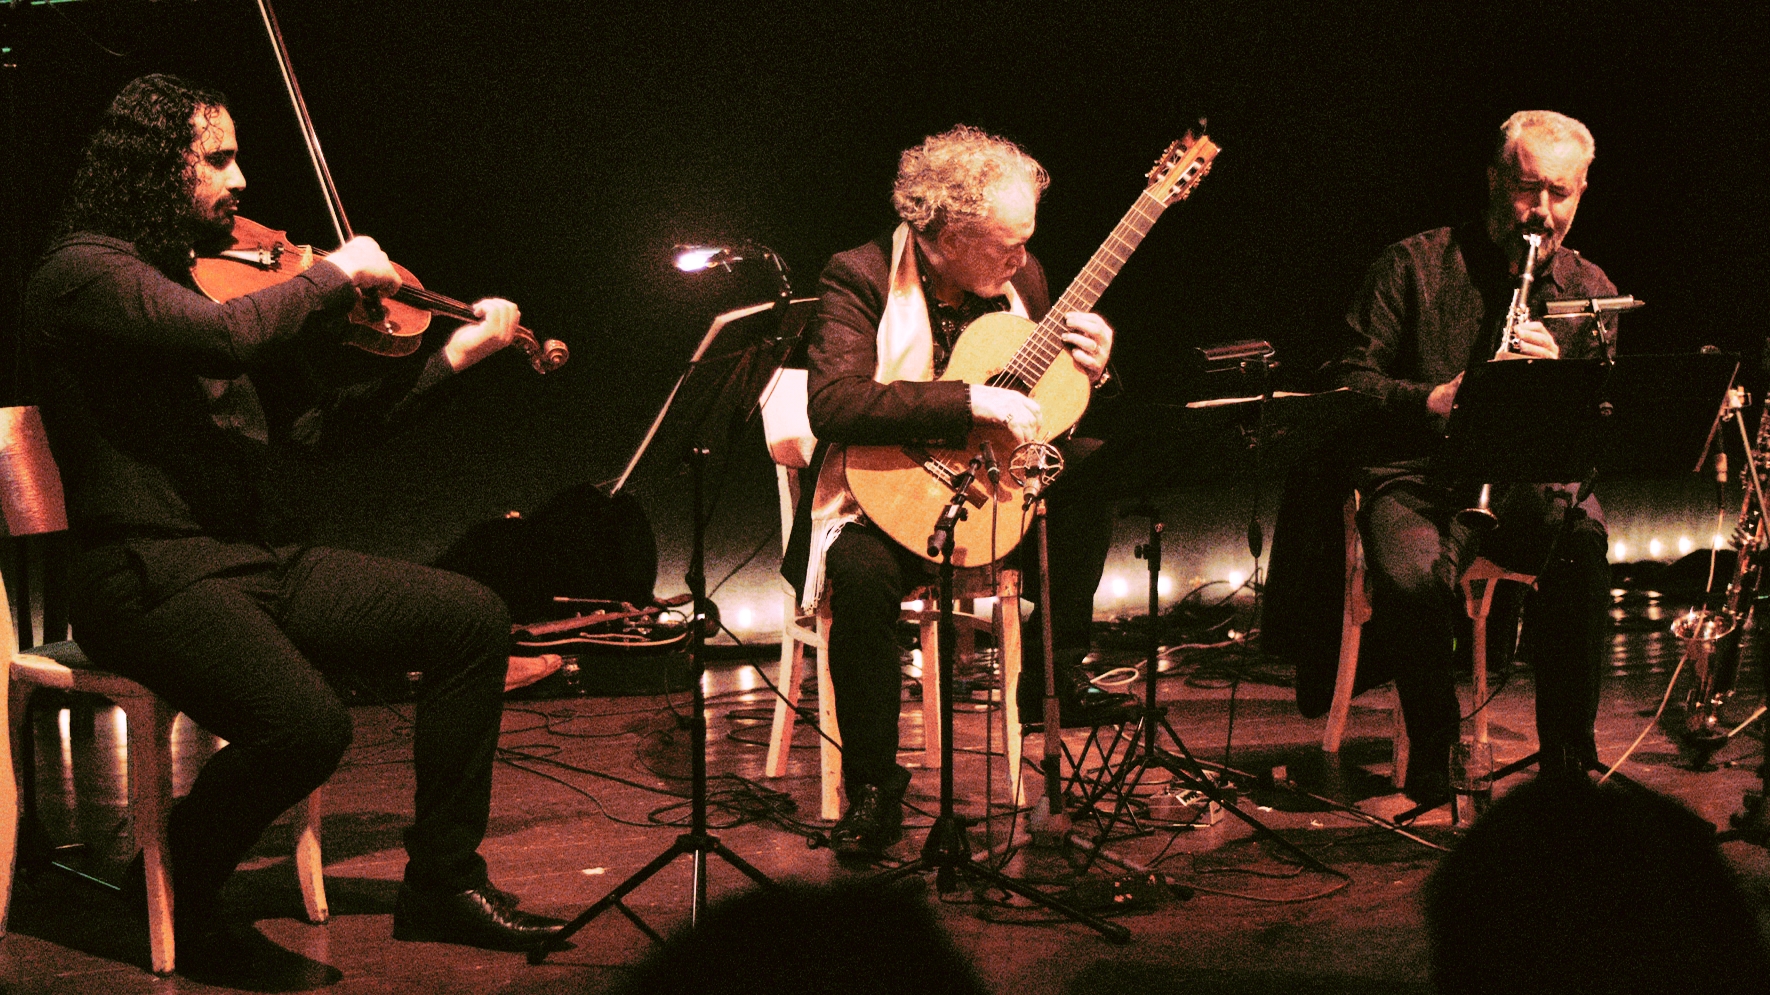 Drei Musiker sitzen auf einer Bühne und spielen ihre Instrumente, eine Bratsche, eine Klarinette und eine Gitarre.